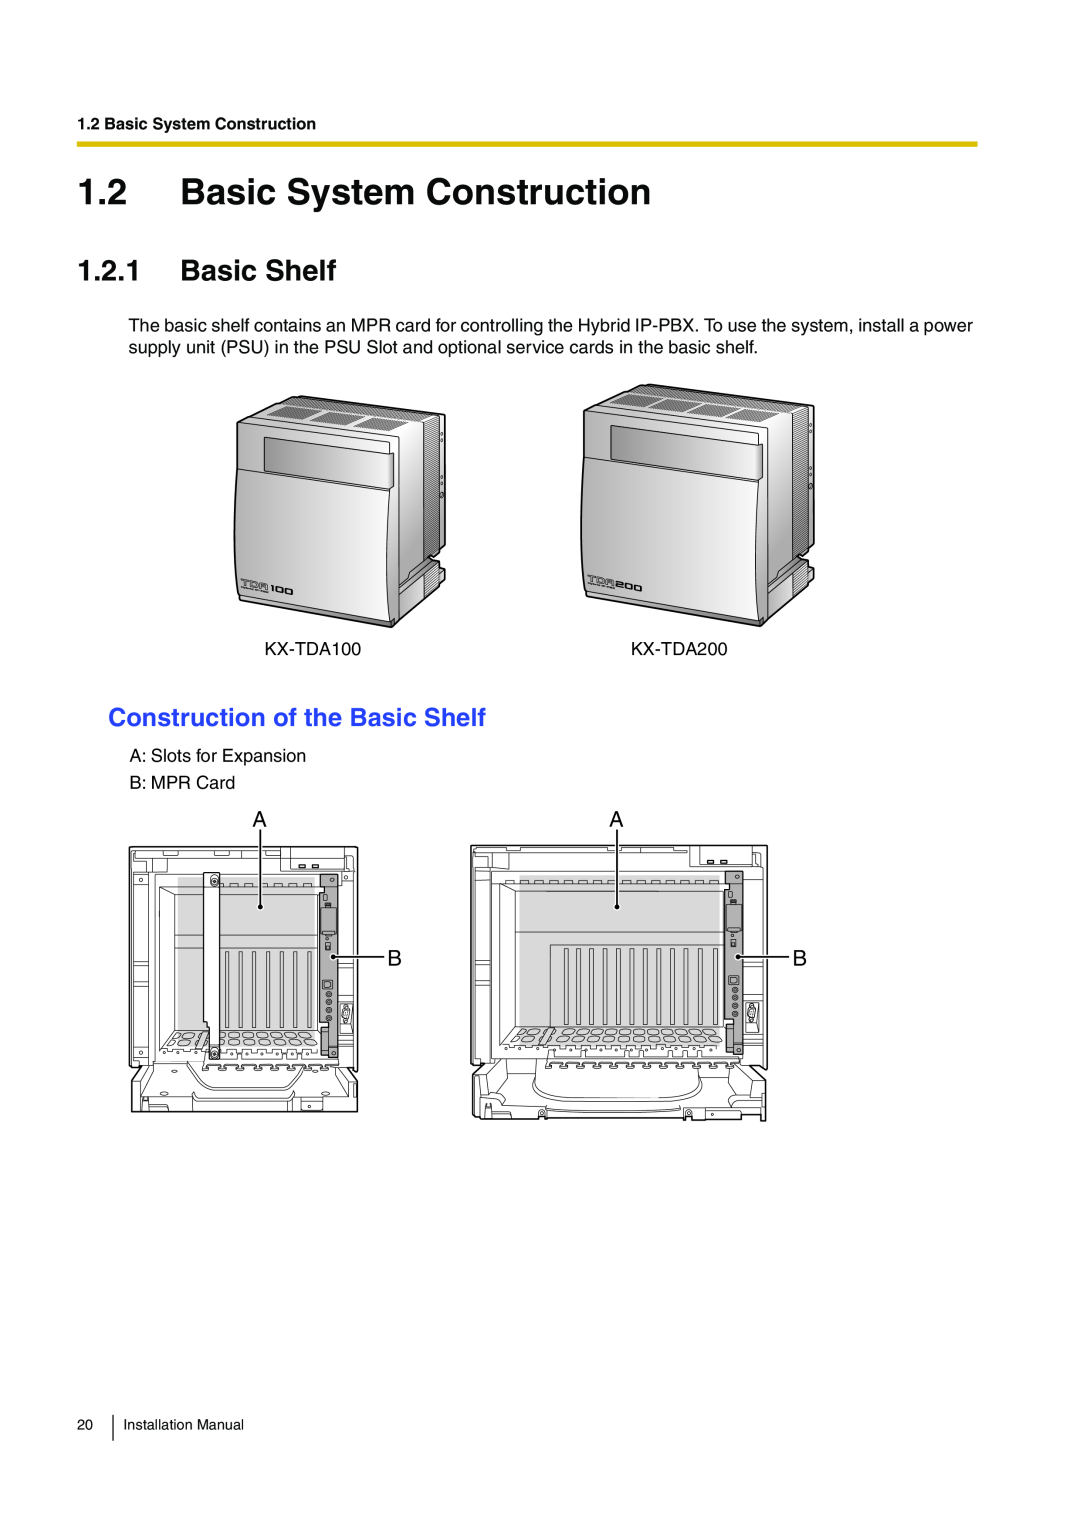 Panasonic KX-TDA100 installation manual Basic System Construction, Construction of the Basic Shelf, Aa Bb 